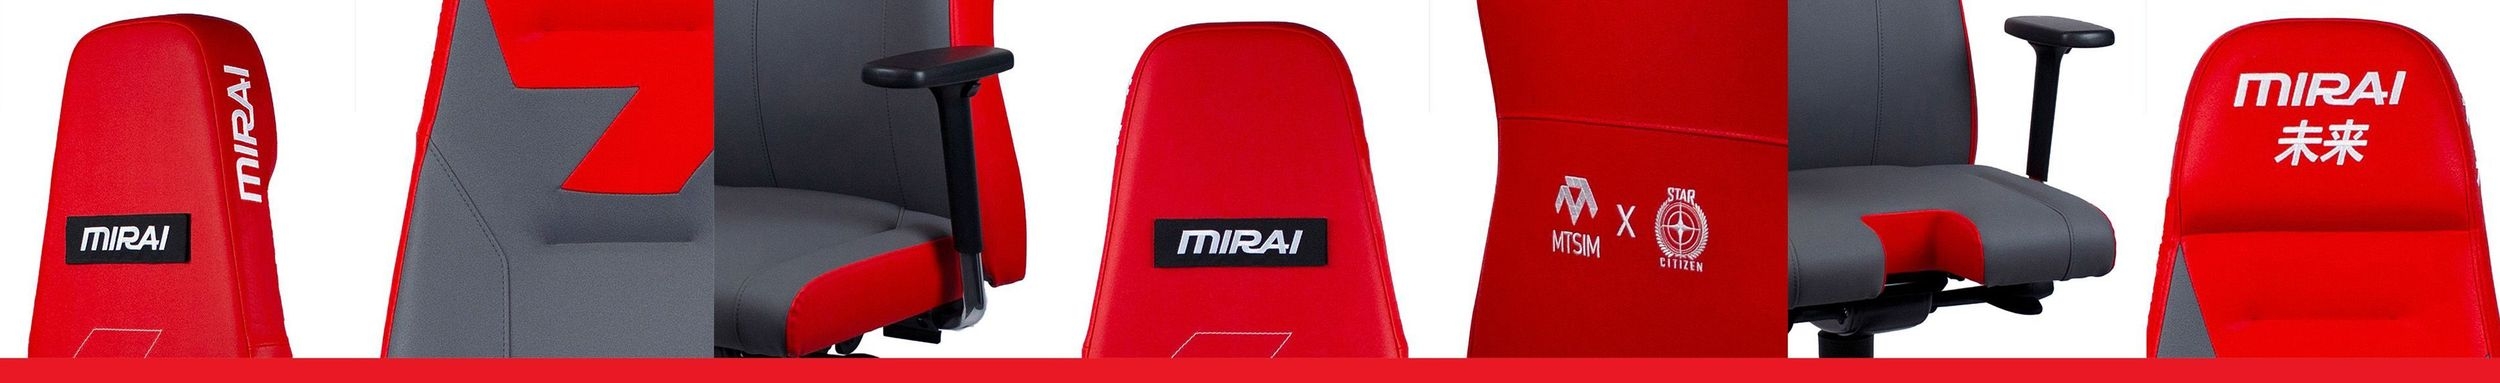 mtsim-chairs-mirai-bottom.jpg